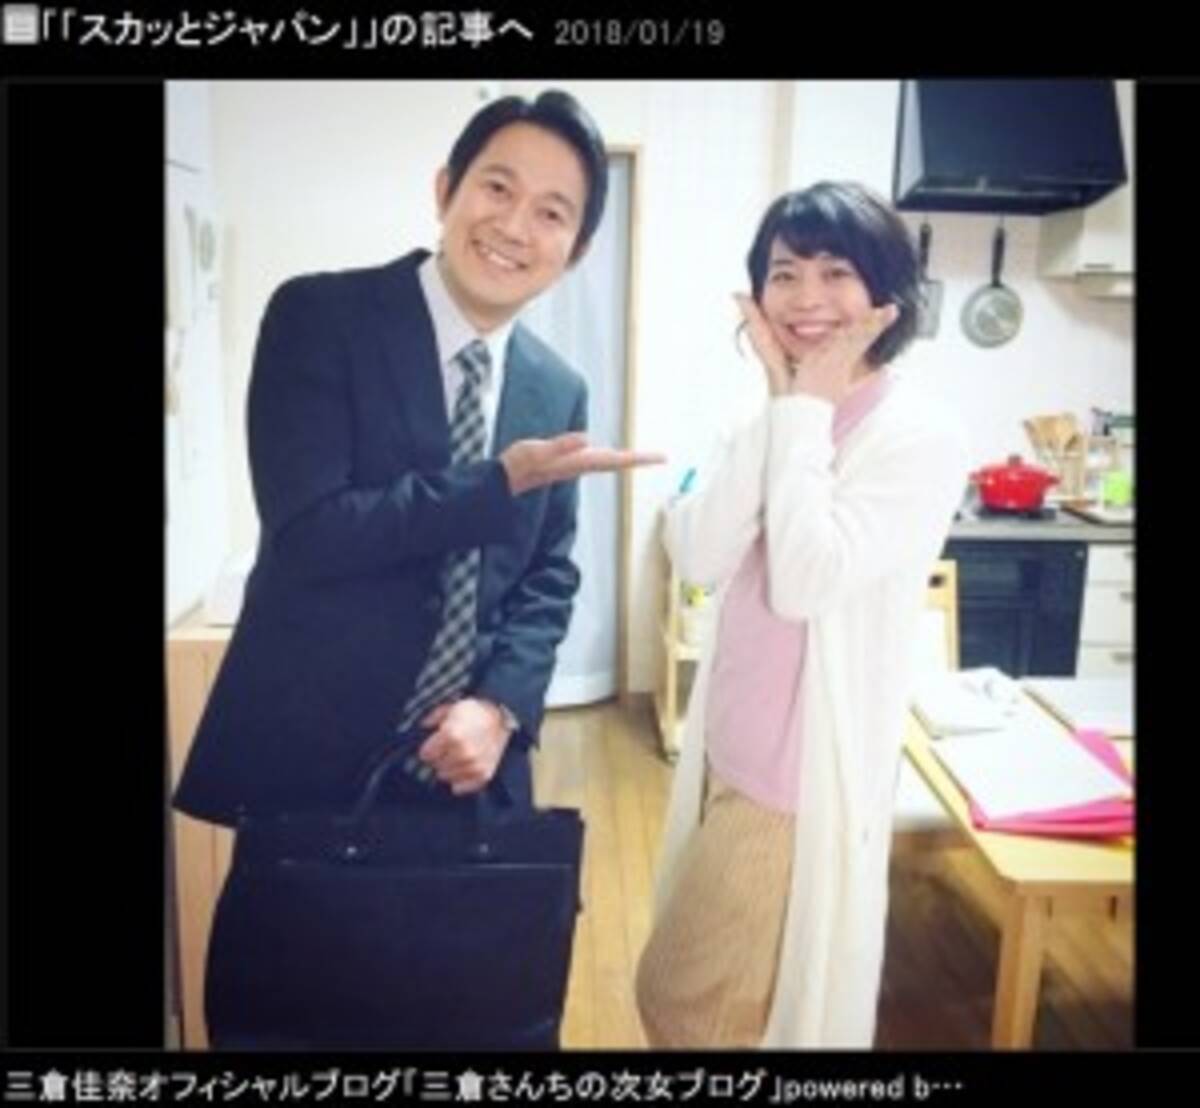 アキラ100 と再現ドラマで共演した三倉佳奈 とっても優しく謙虚な方 18年1月23日 エキサイトニュース